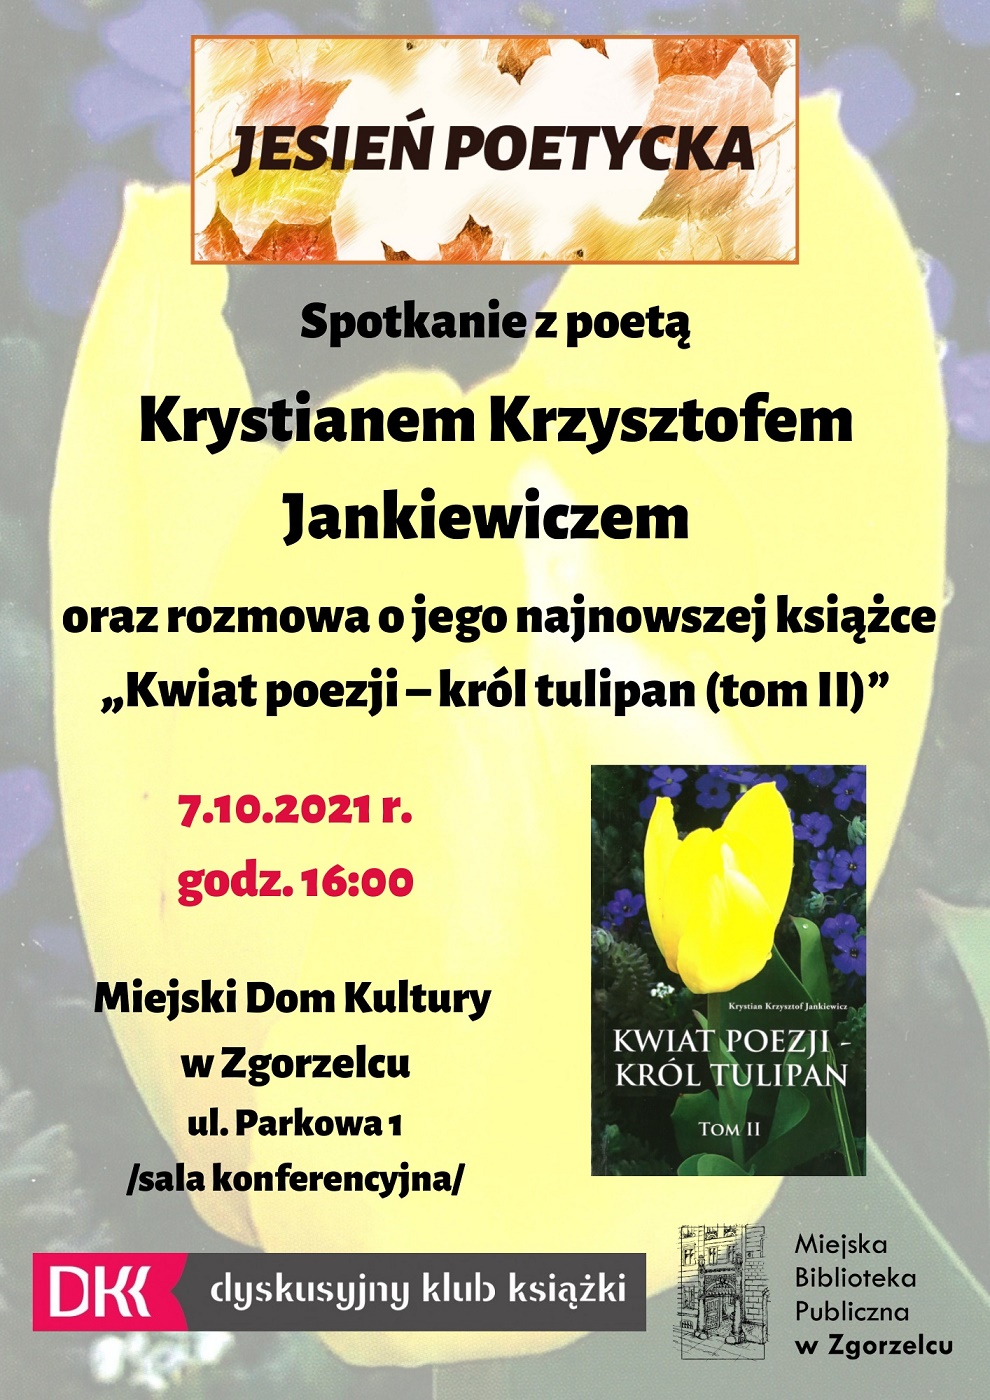 Spotkanie ze zgorzeleckim poetą Krystianem Krzysztofem Jankiewiczem